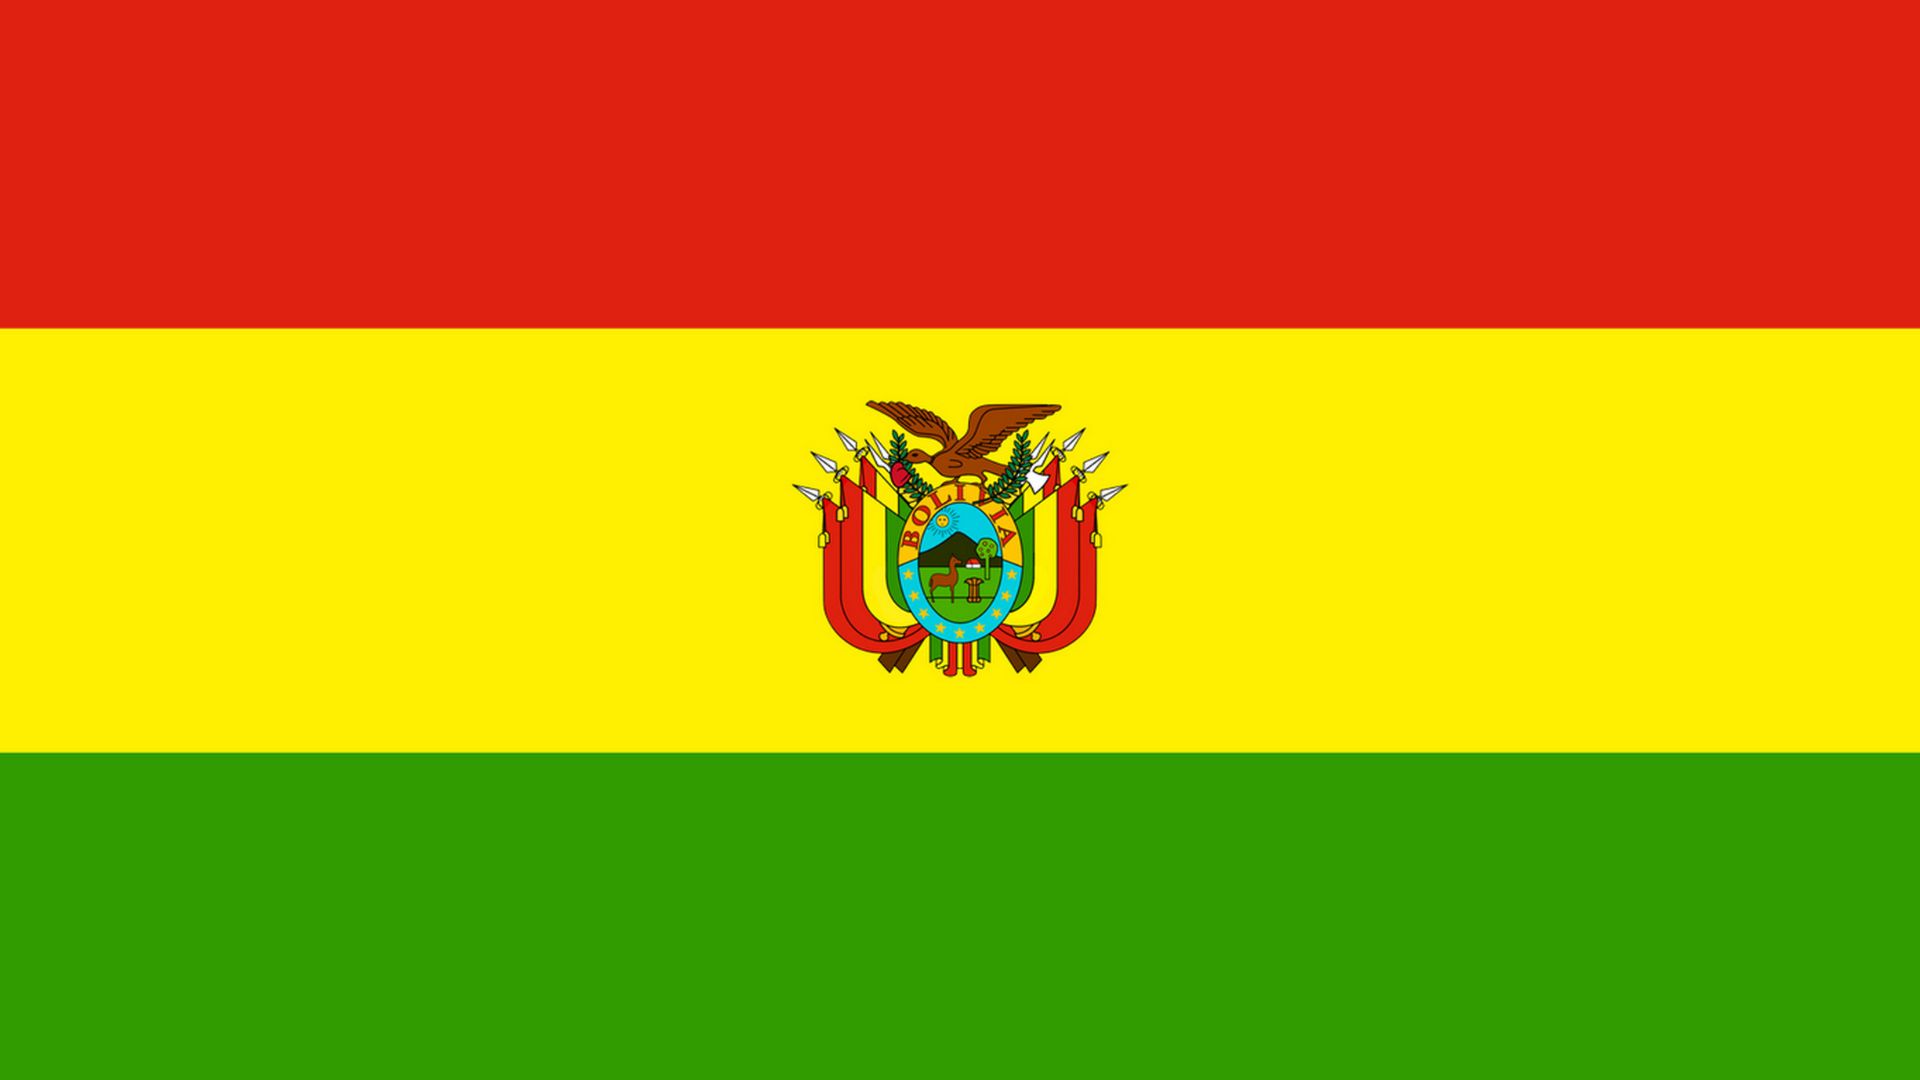 A bandeira  da Bolívia consiste de listras horizontais de vermelho, amarelo e verde e contém o brasão de armas da Bolívia no centro. A bandeira nacional omite o brasão.